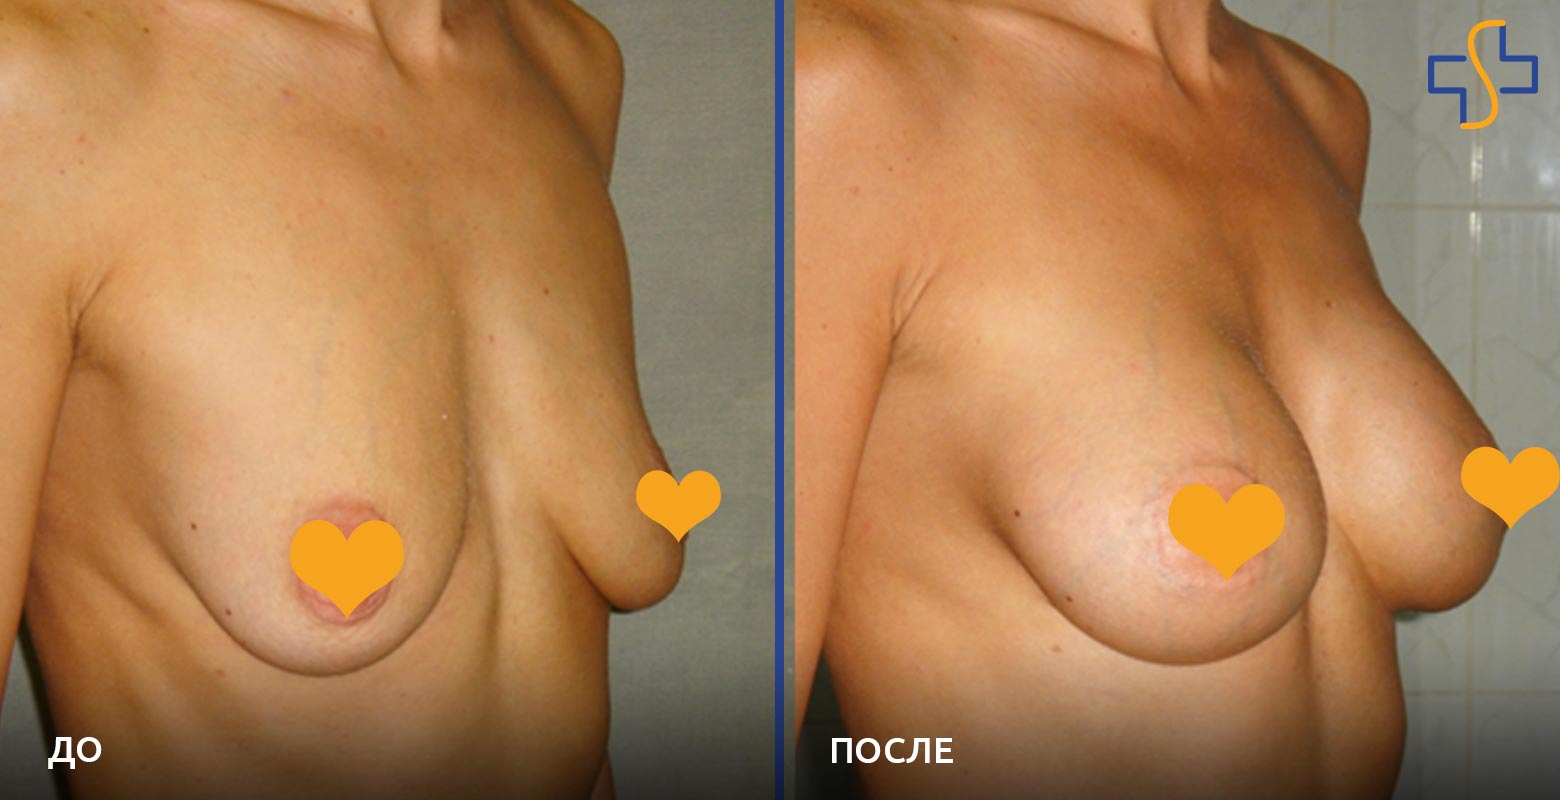 фото до/после проведенной операции по увеличению груди